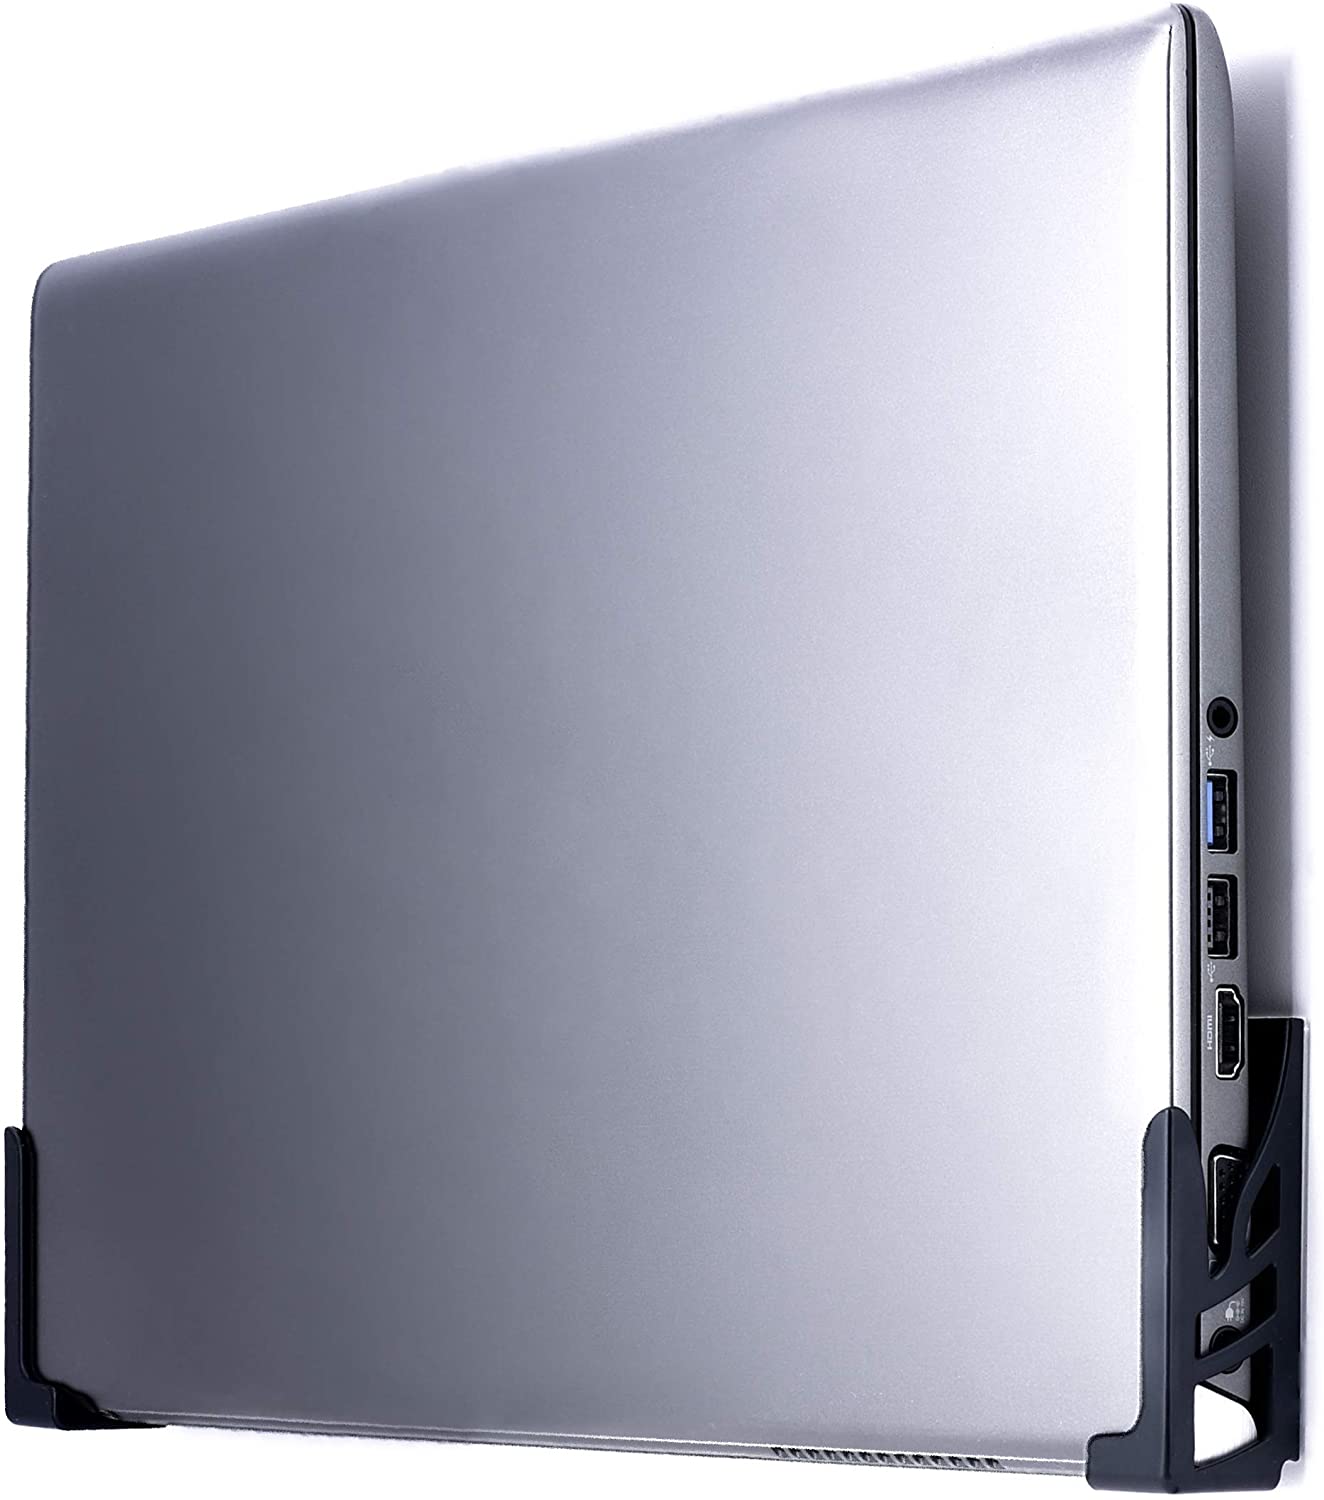 Koala Mount 2XL - Laptop & Thick Device Wall Mount